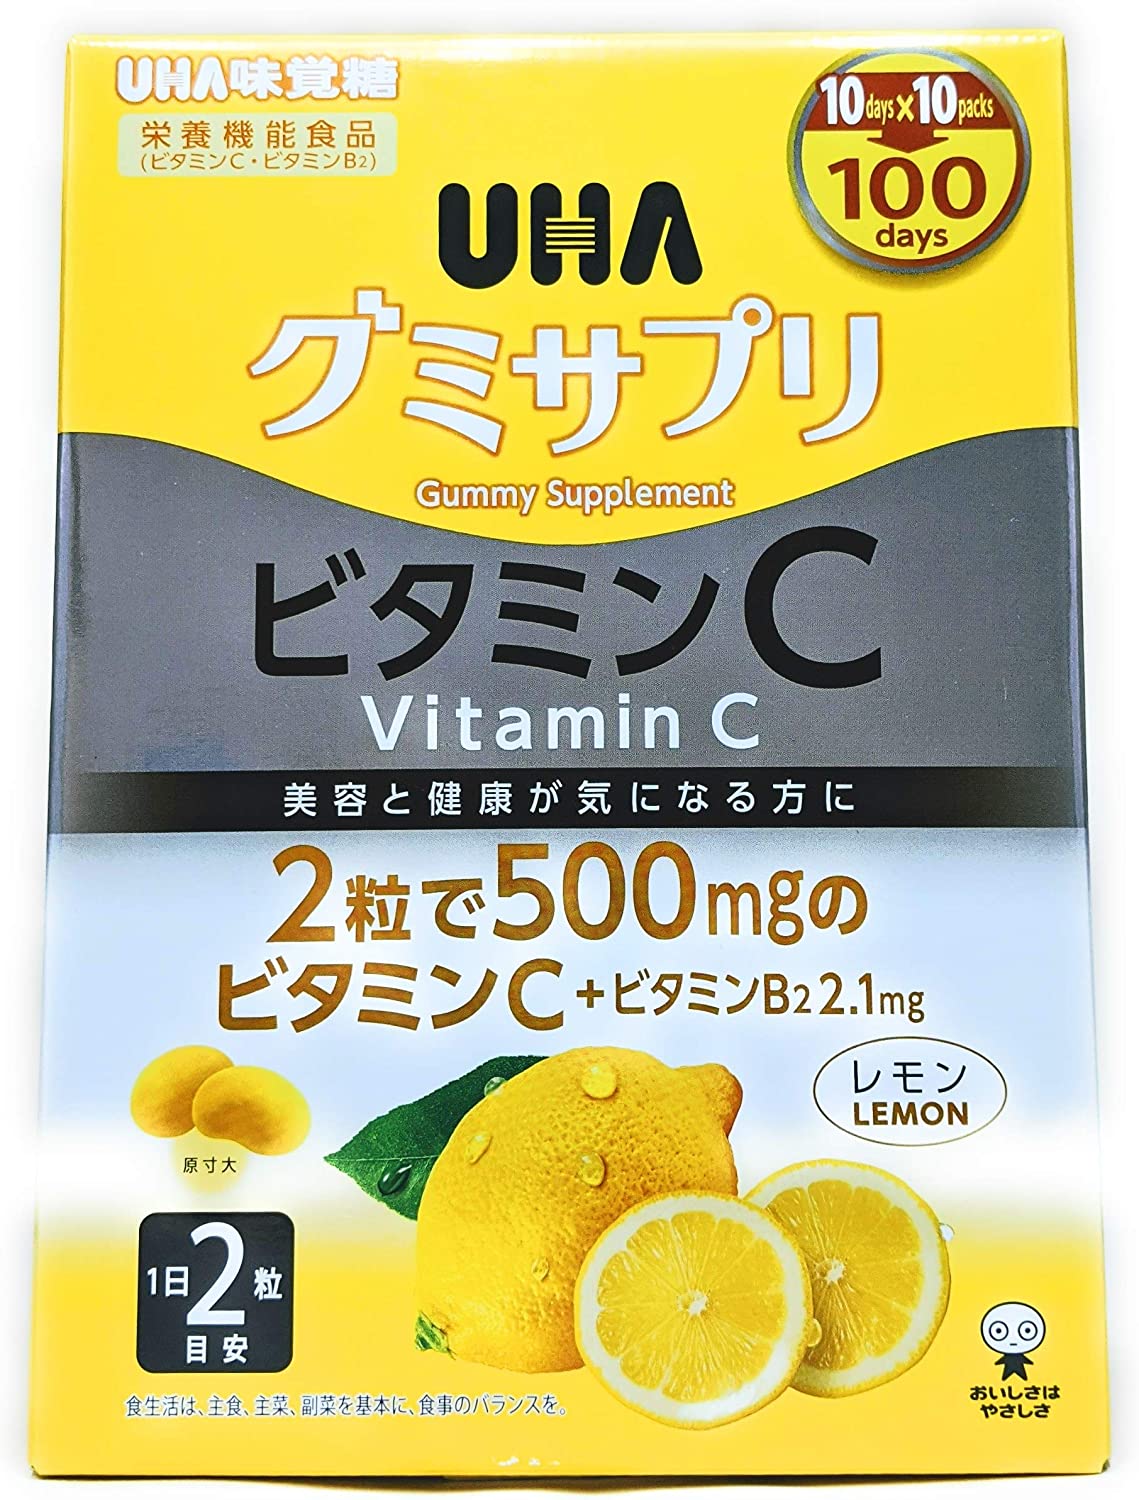 аскорбинка со вкусом лимона в пакетиках здравсити дополнительный источник витамина с 30 шт Жевательный витамин С UHA, 200 таблеток